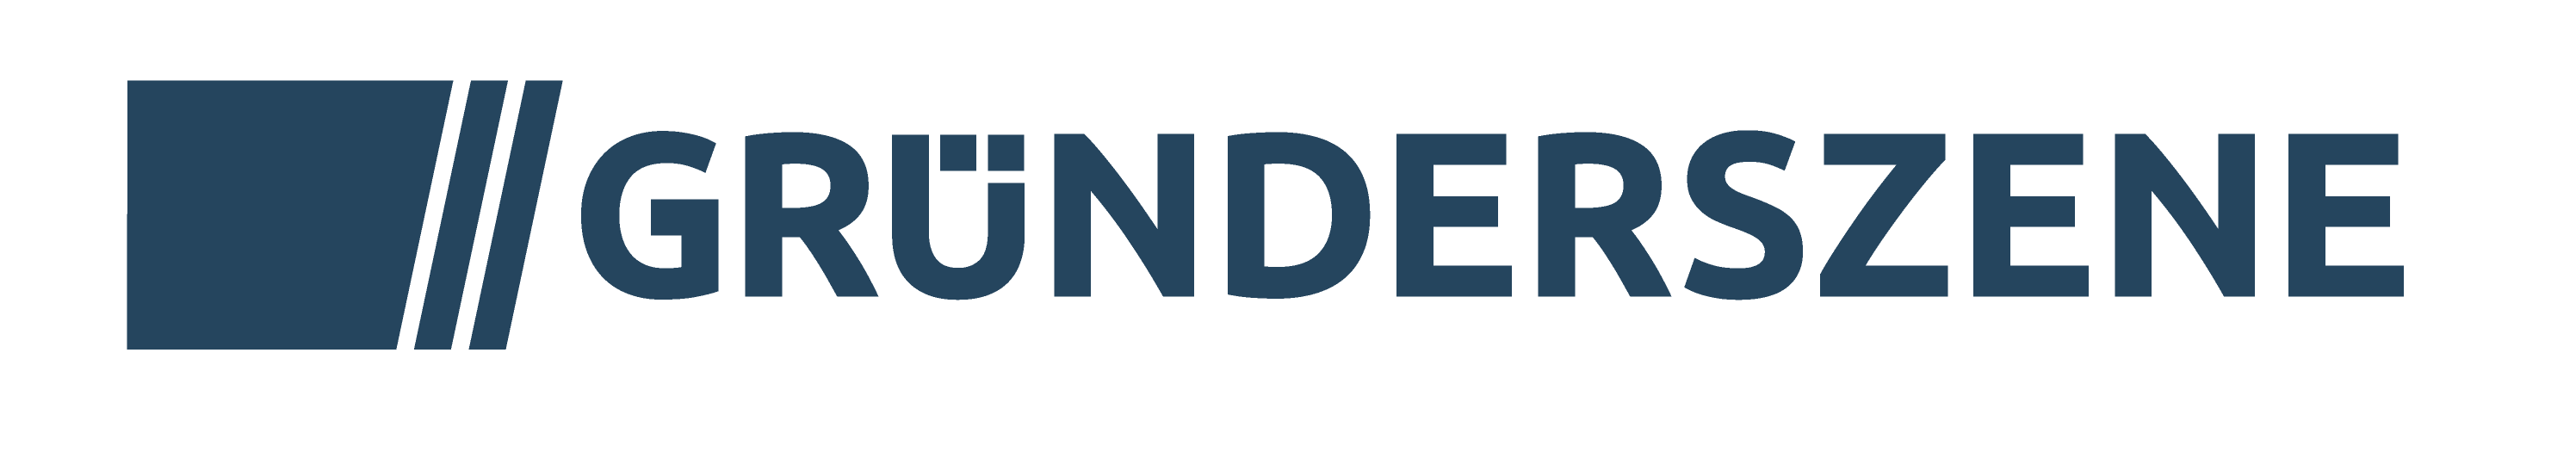 Gruenderszene Logo